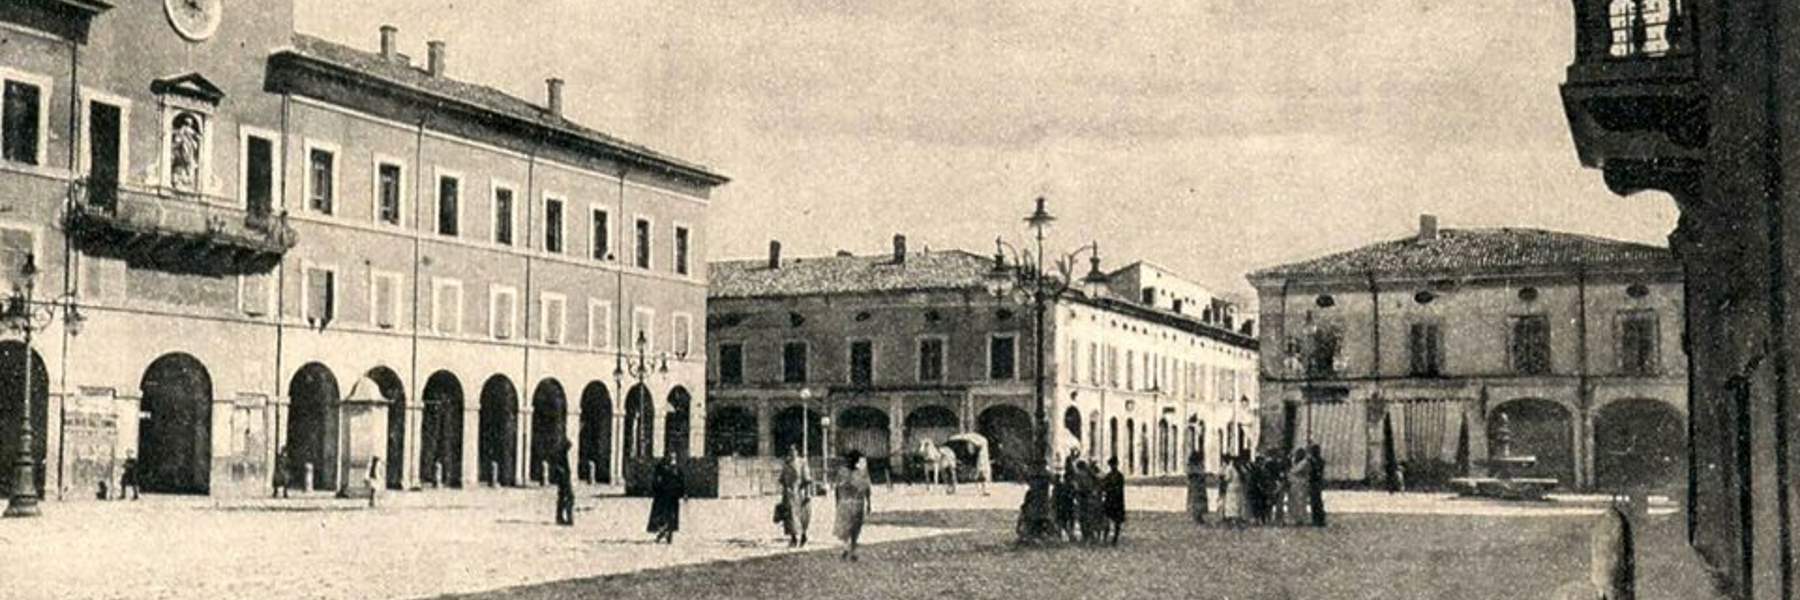 Der Boden des Piazzas Garibaldi